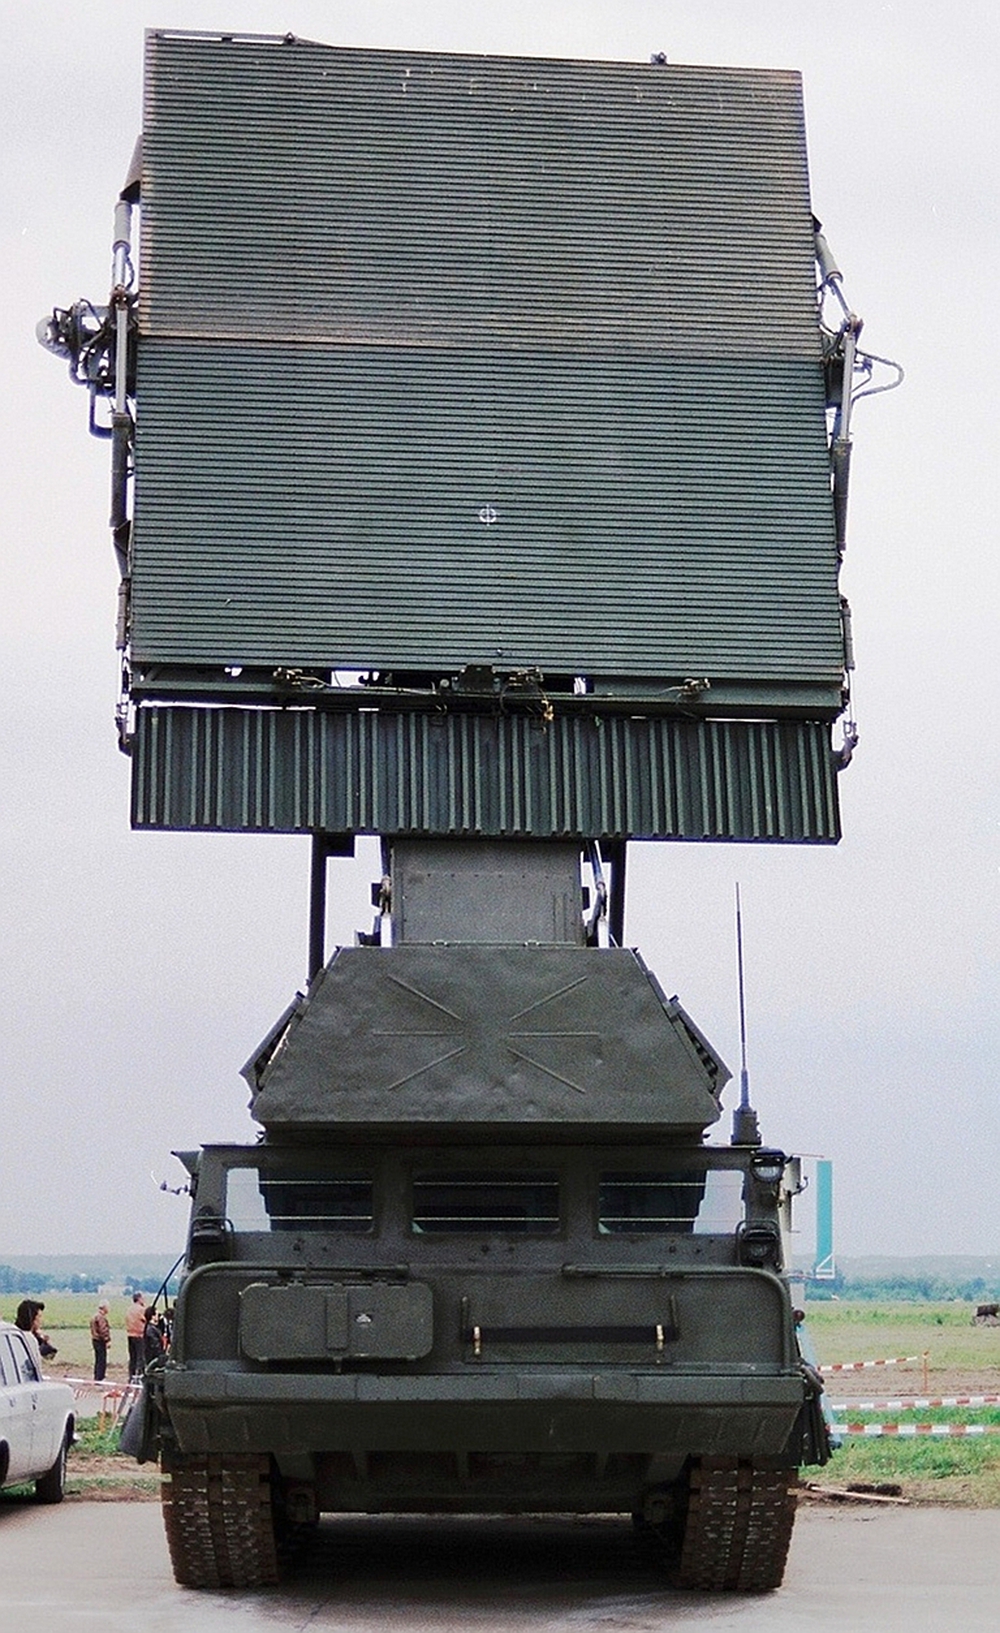 Siêu hệ thống tên lửa Antey-2500: Nguy hiểm bậc nhất thế giới - Ảnh 5.